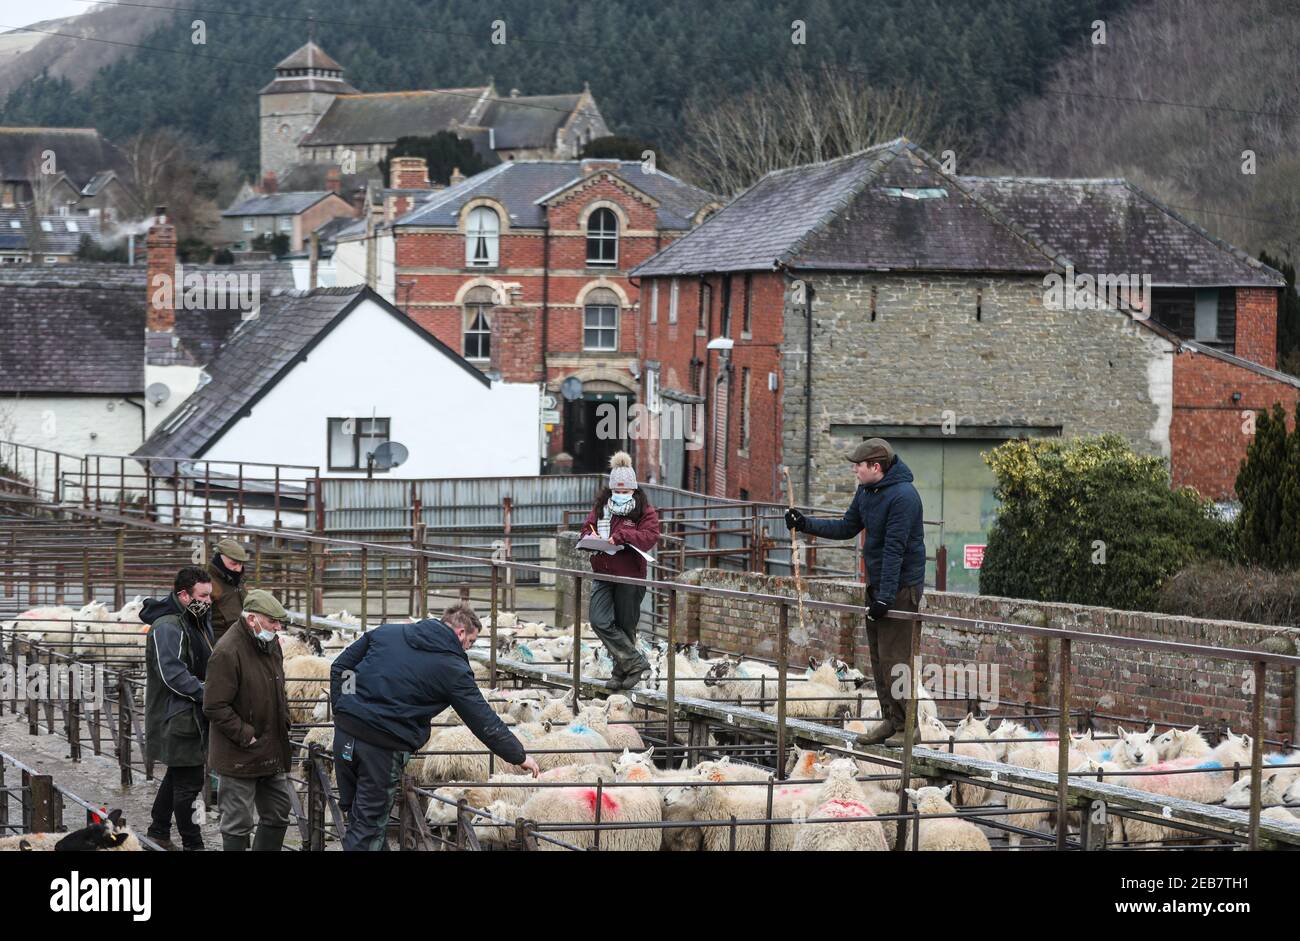 Schafe werden auf dem Knighton Livestock Market in Powys während der nationalen Sperre von Wales verkauft, um die Ausbreitung des Coronavirus einzudämmen. Bilddatum: Donnerstag, 11. Februar 2021. Stockfoto